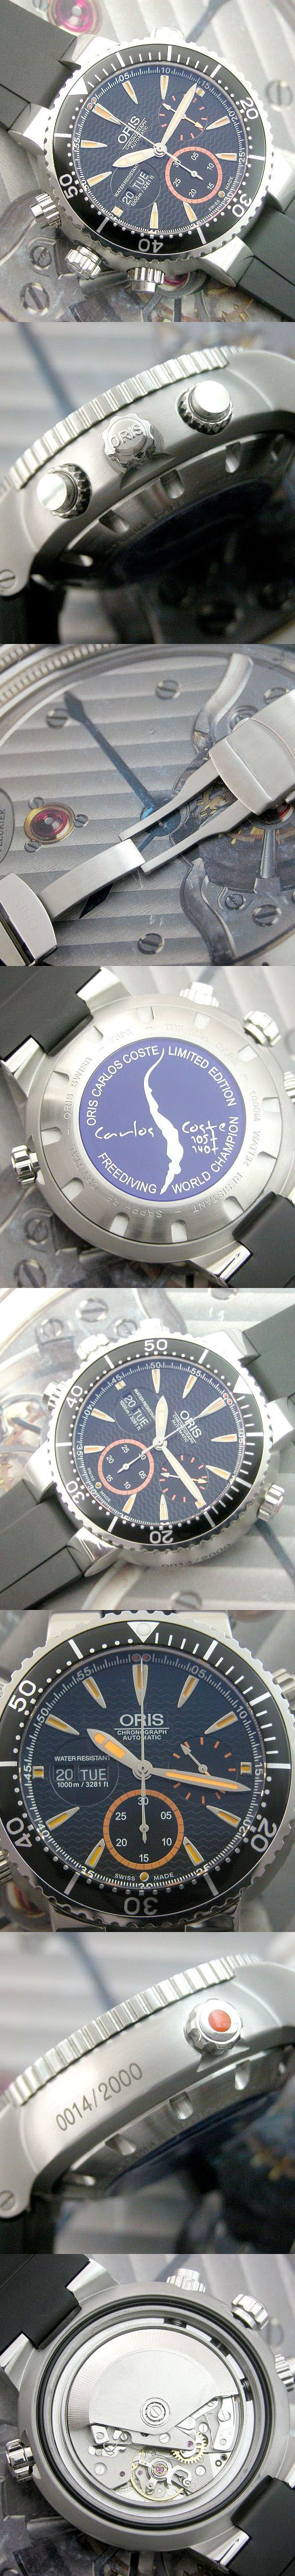 おしゃれなブランド時計がオリス-ダイバーズ-ORIS-649-7610-7164-R-aa-男性用を提供します.